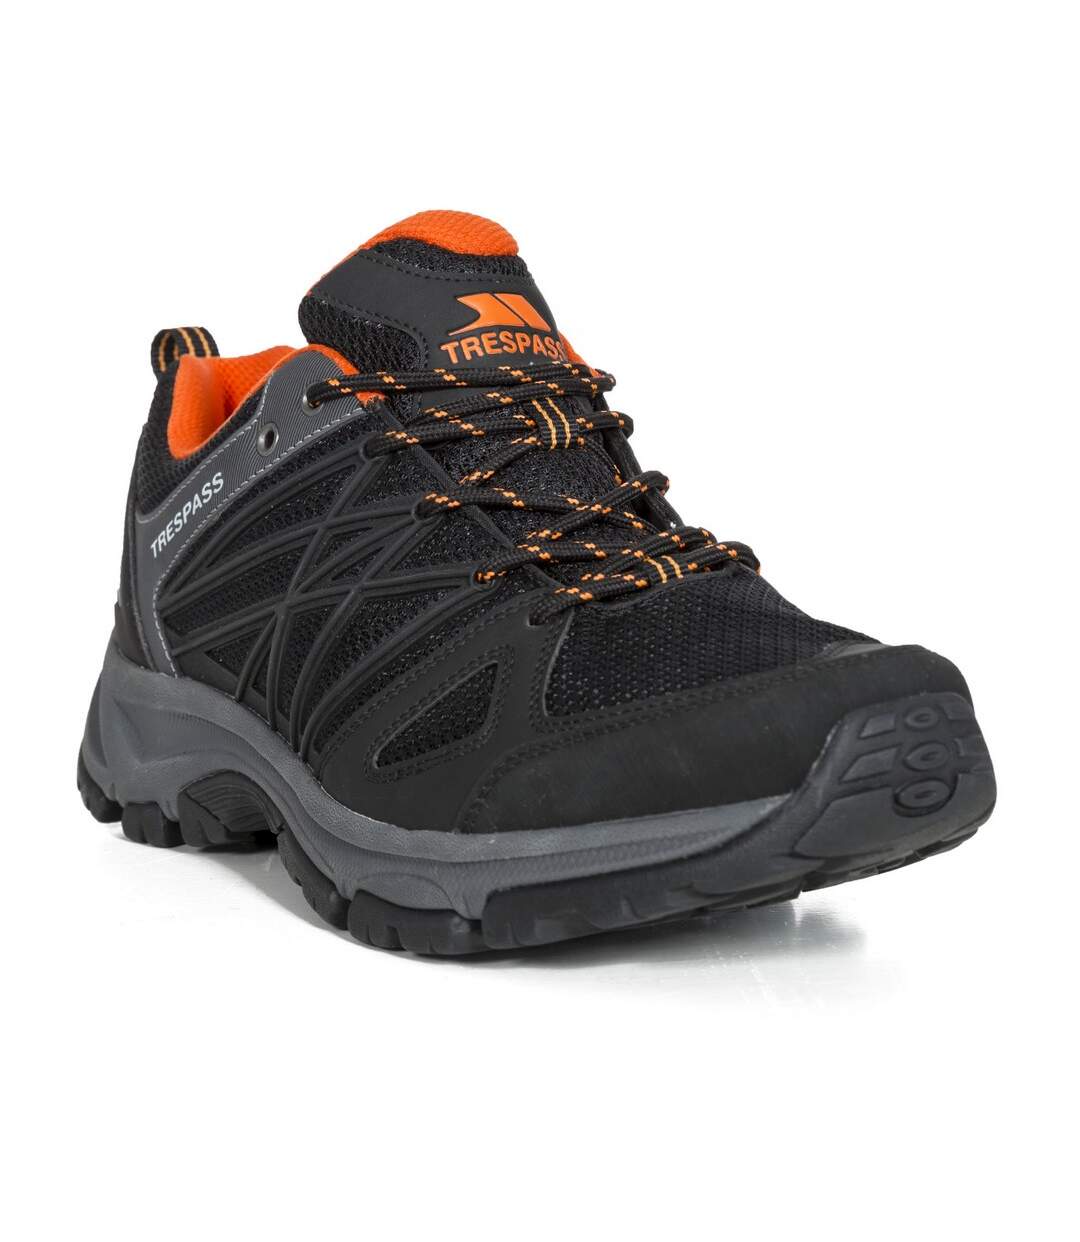 Trespass - Chaussures de randonnée FISK - Homme (Noir) - UTTP4244